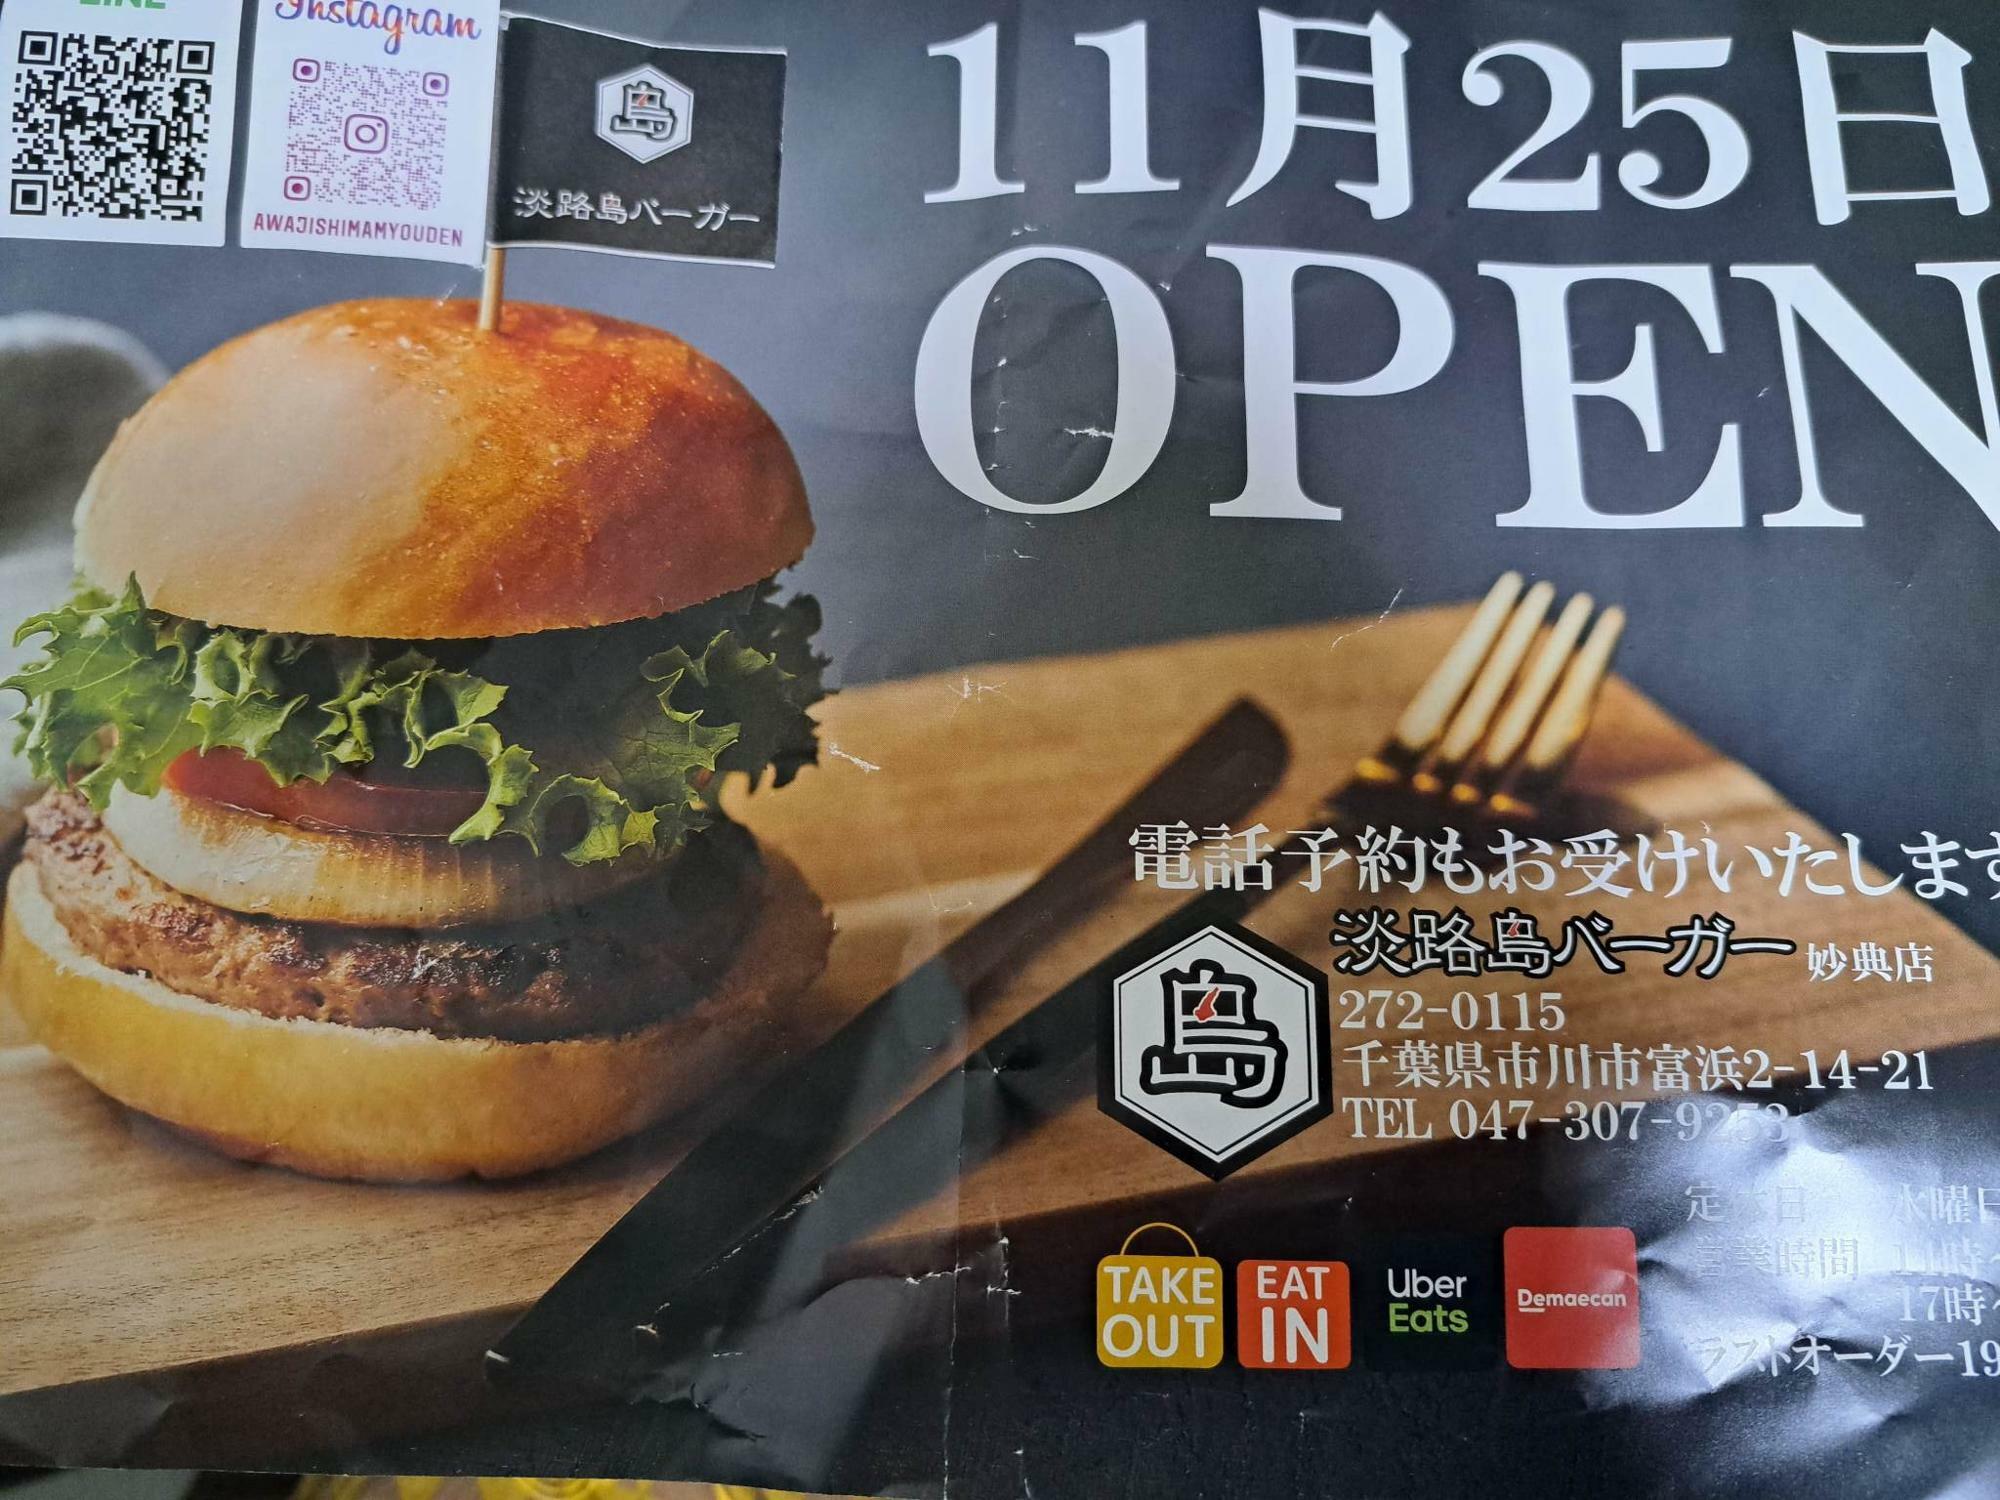 淡路島バーガー妙典店はテイクアウトの電話予約をお勧めいたします。